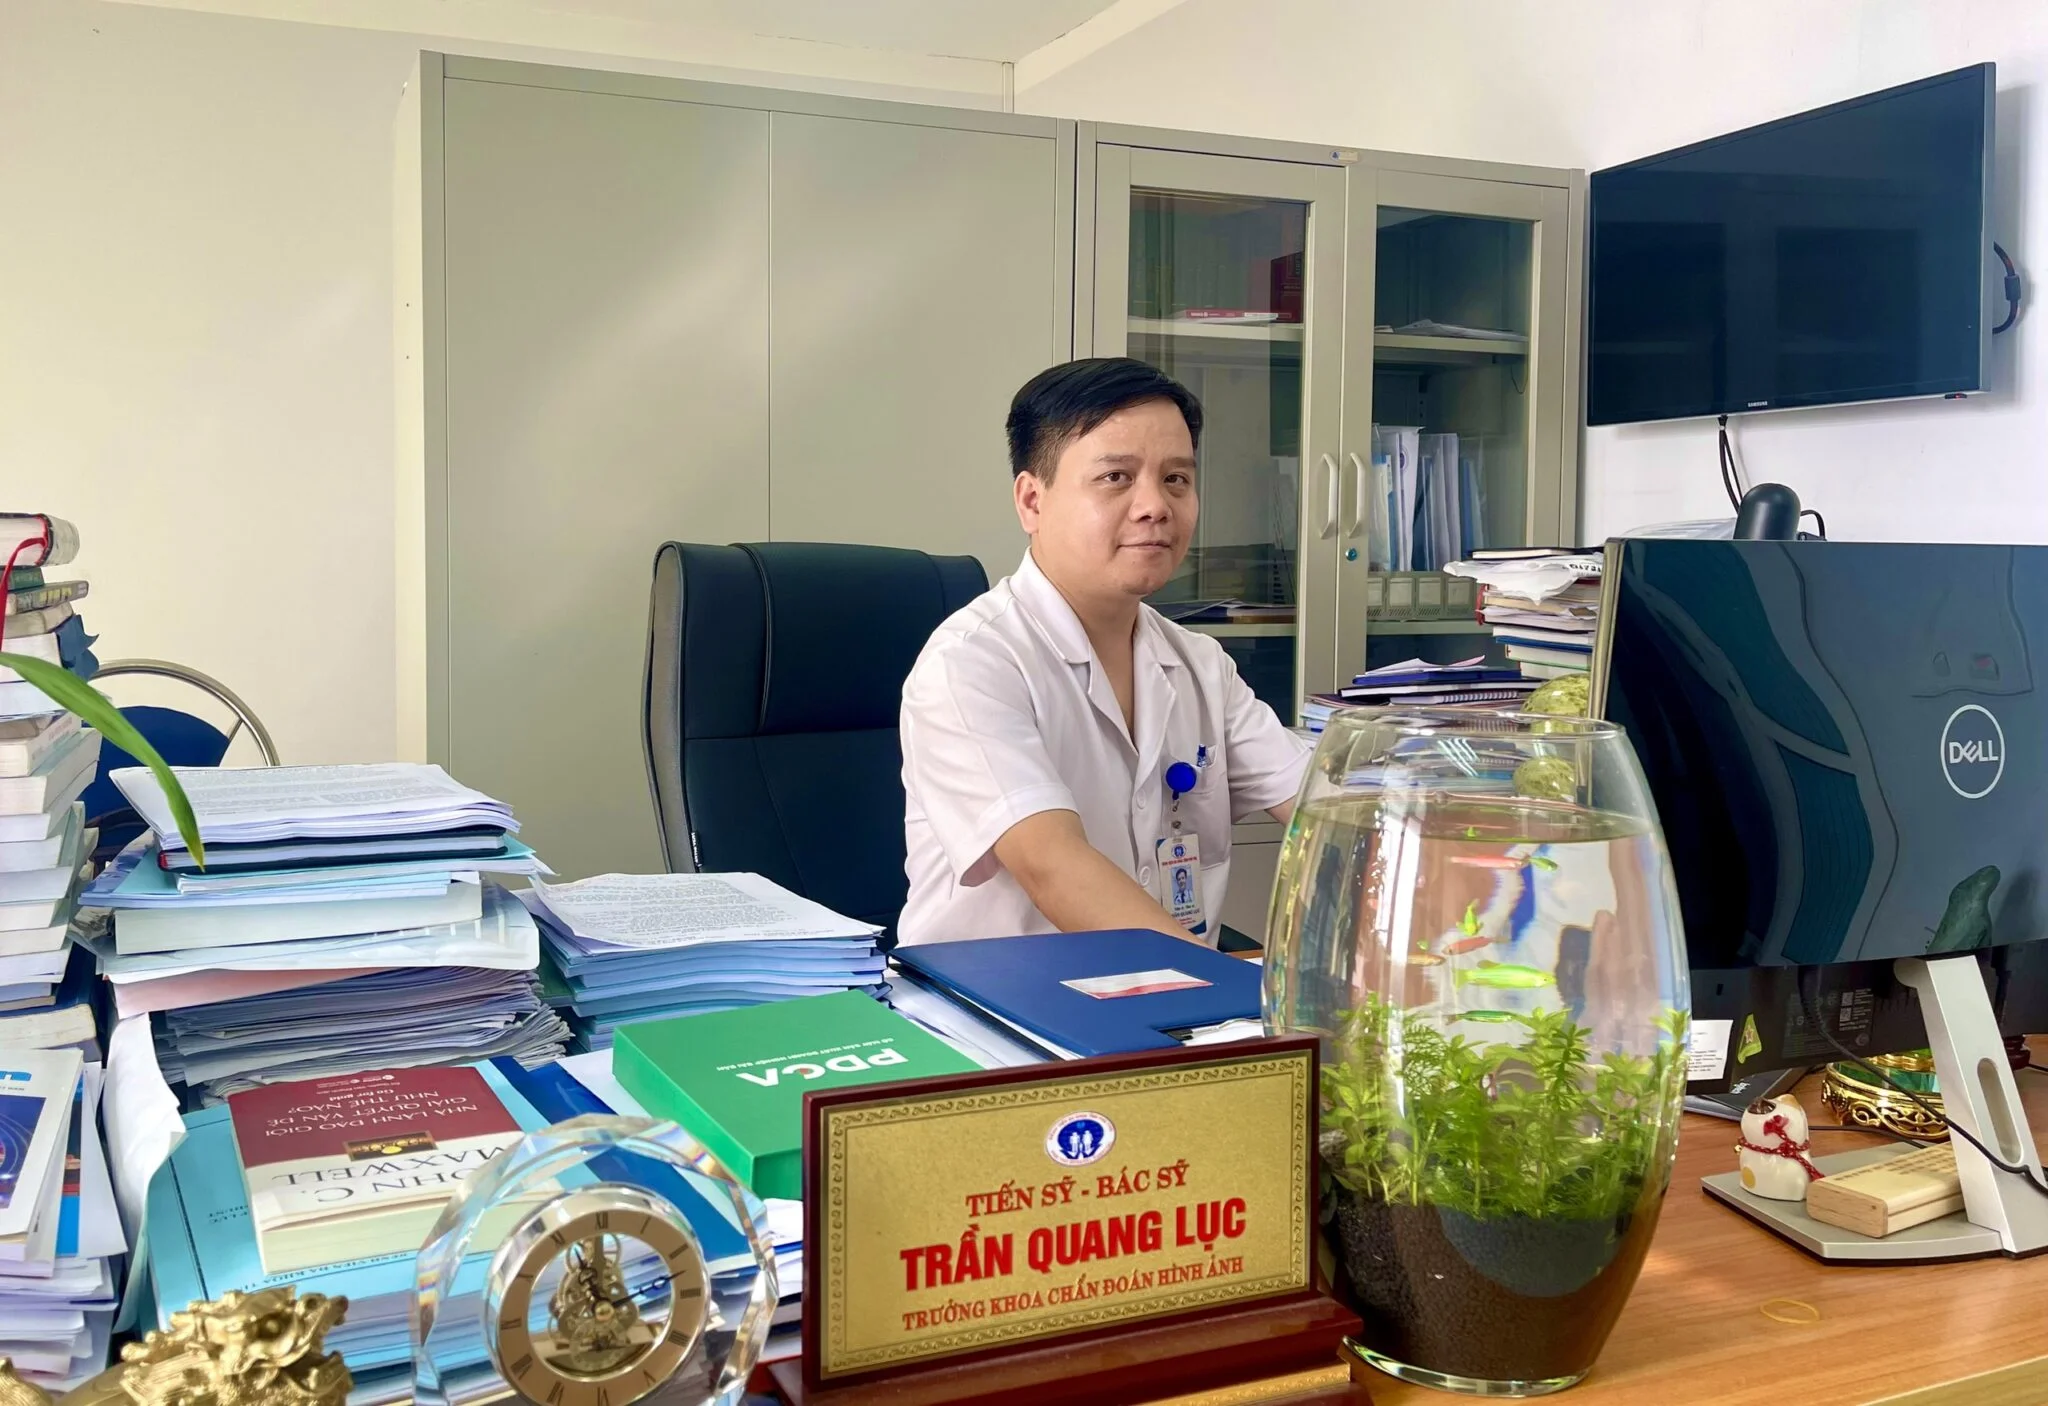 Trưởng khoa Chẩn đoán hình ảnh, Tiến sĩ, bác sĩ Trần Quang Lục chia sẻ về kỹ thuật DSA